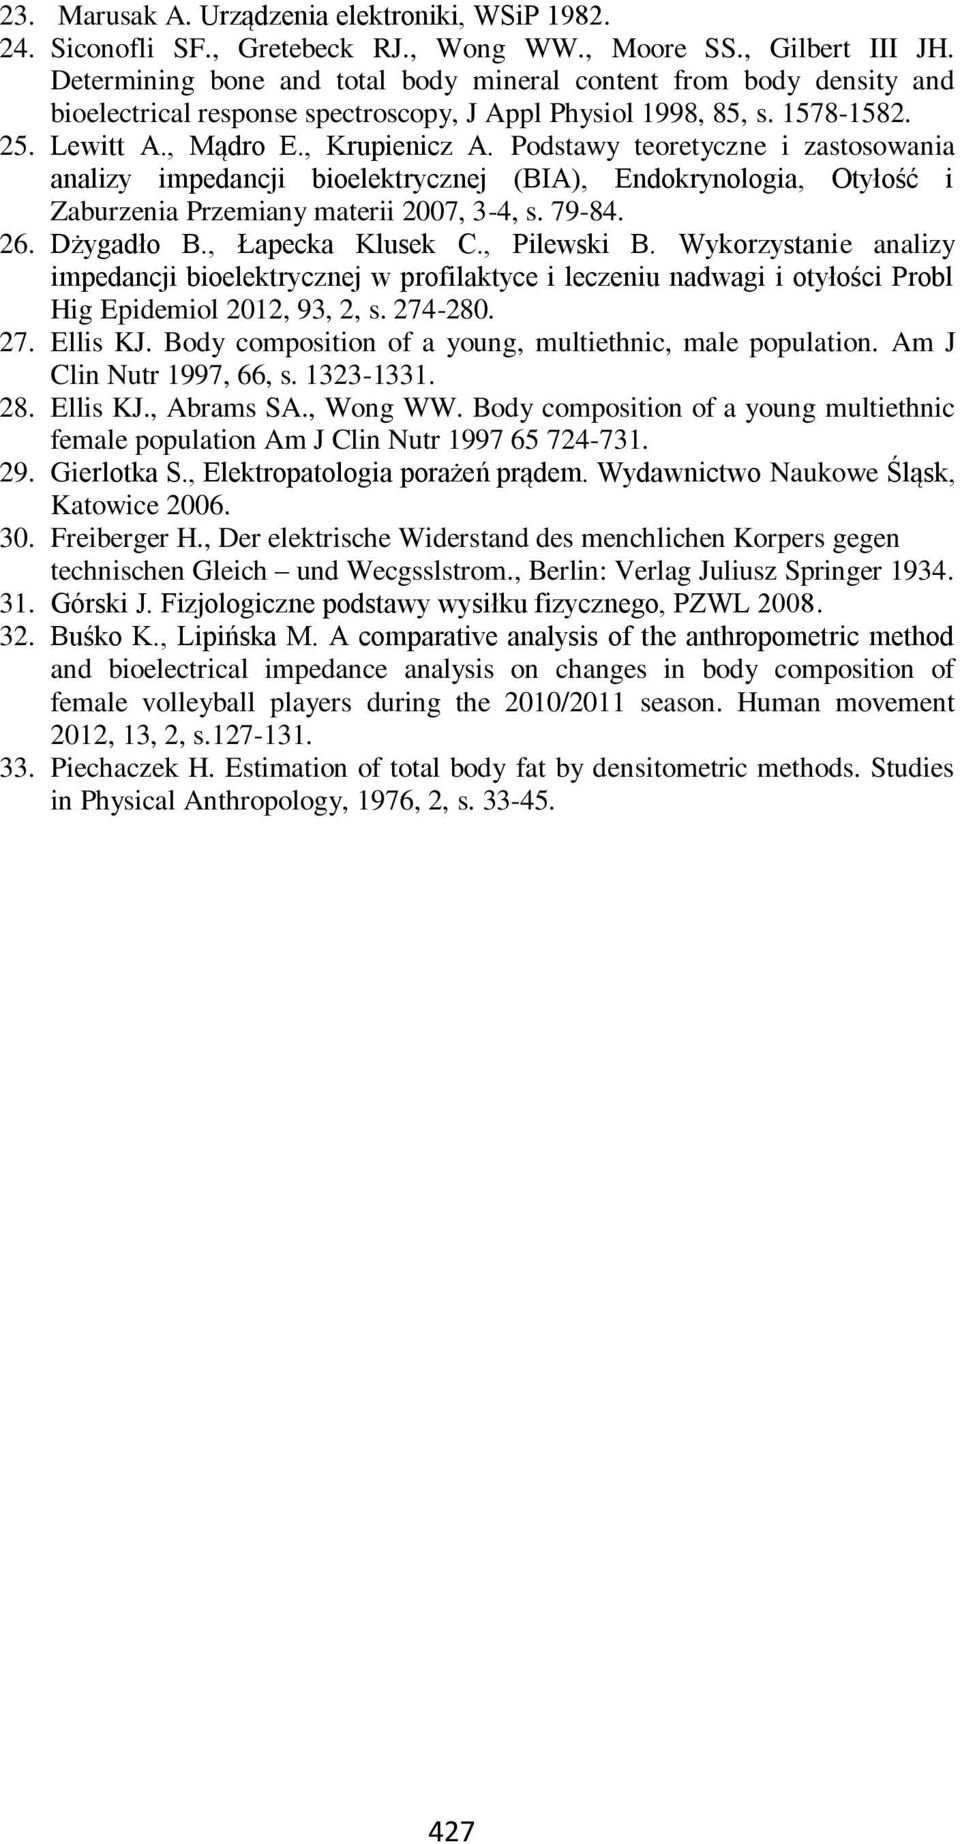 Podstawy teoretyczne i zastosowania analizy impedancji bioelektrycznej (BIA), Endokrynologia, Otyłość i Zaburzenia Przemiany materii 007, 3-4, s. 79-84. 6. Dżygadło B., Łapecka Klusek C., Pilewski B.